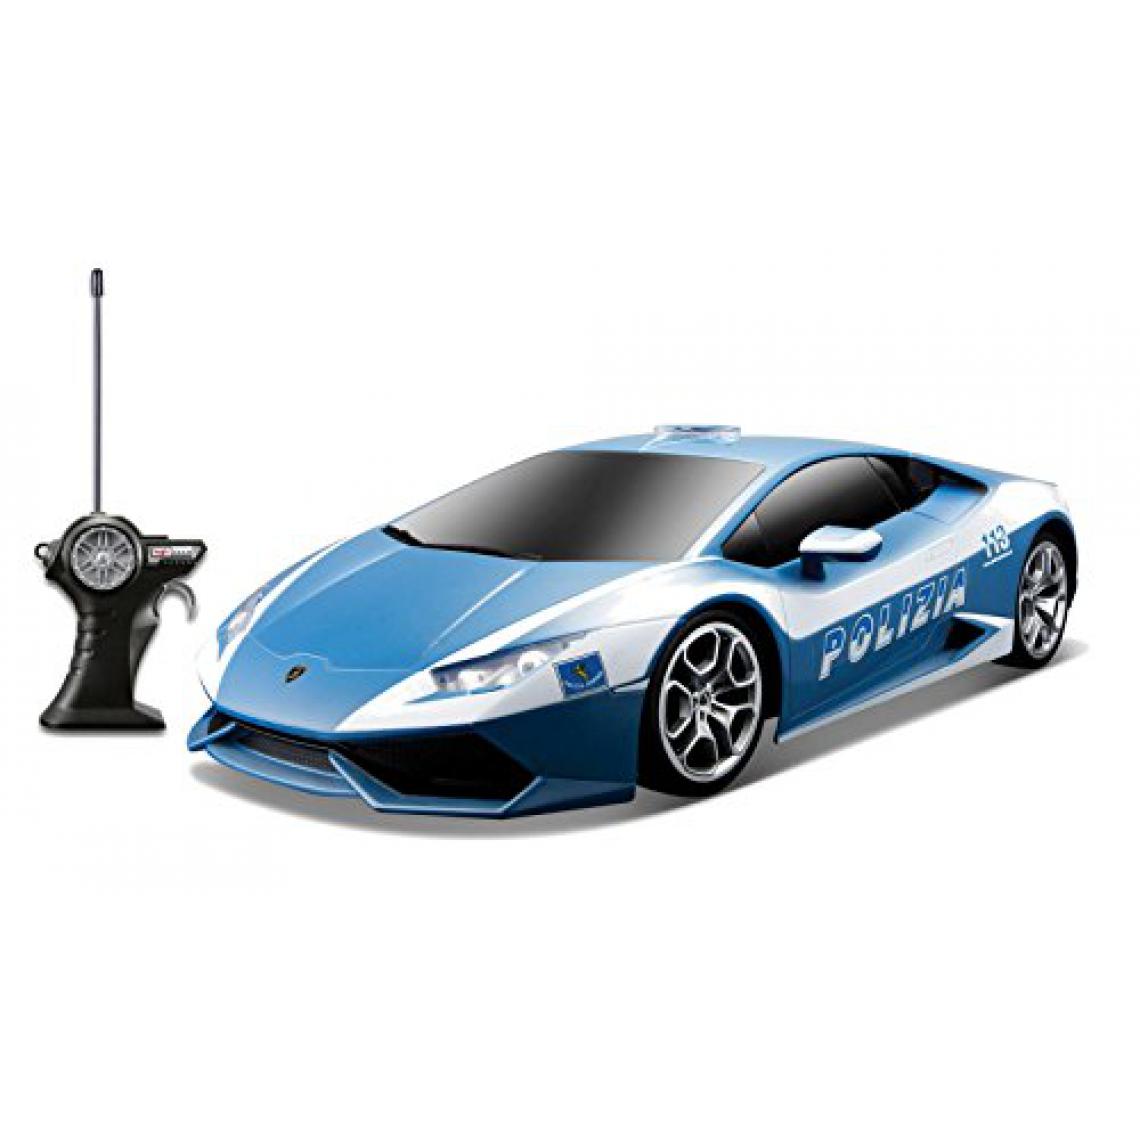 Maisto - Véhicule radiocommandé Maisto R / c 1:24 Lamborghini Huracan Polizia (les couleurs peuvent varier) - Jouet électronique enfant